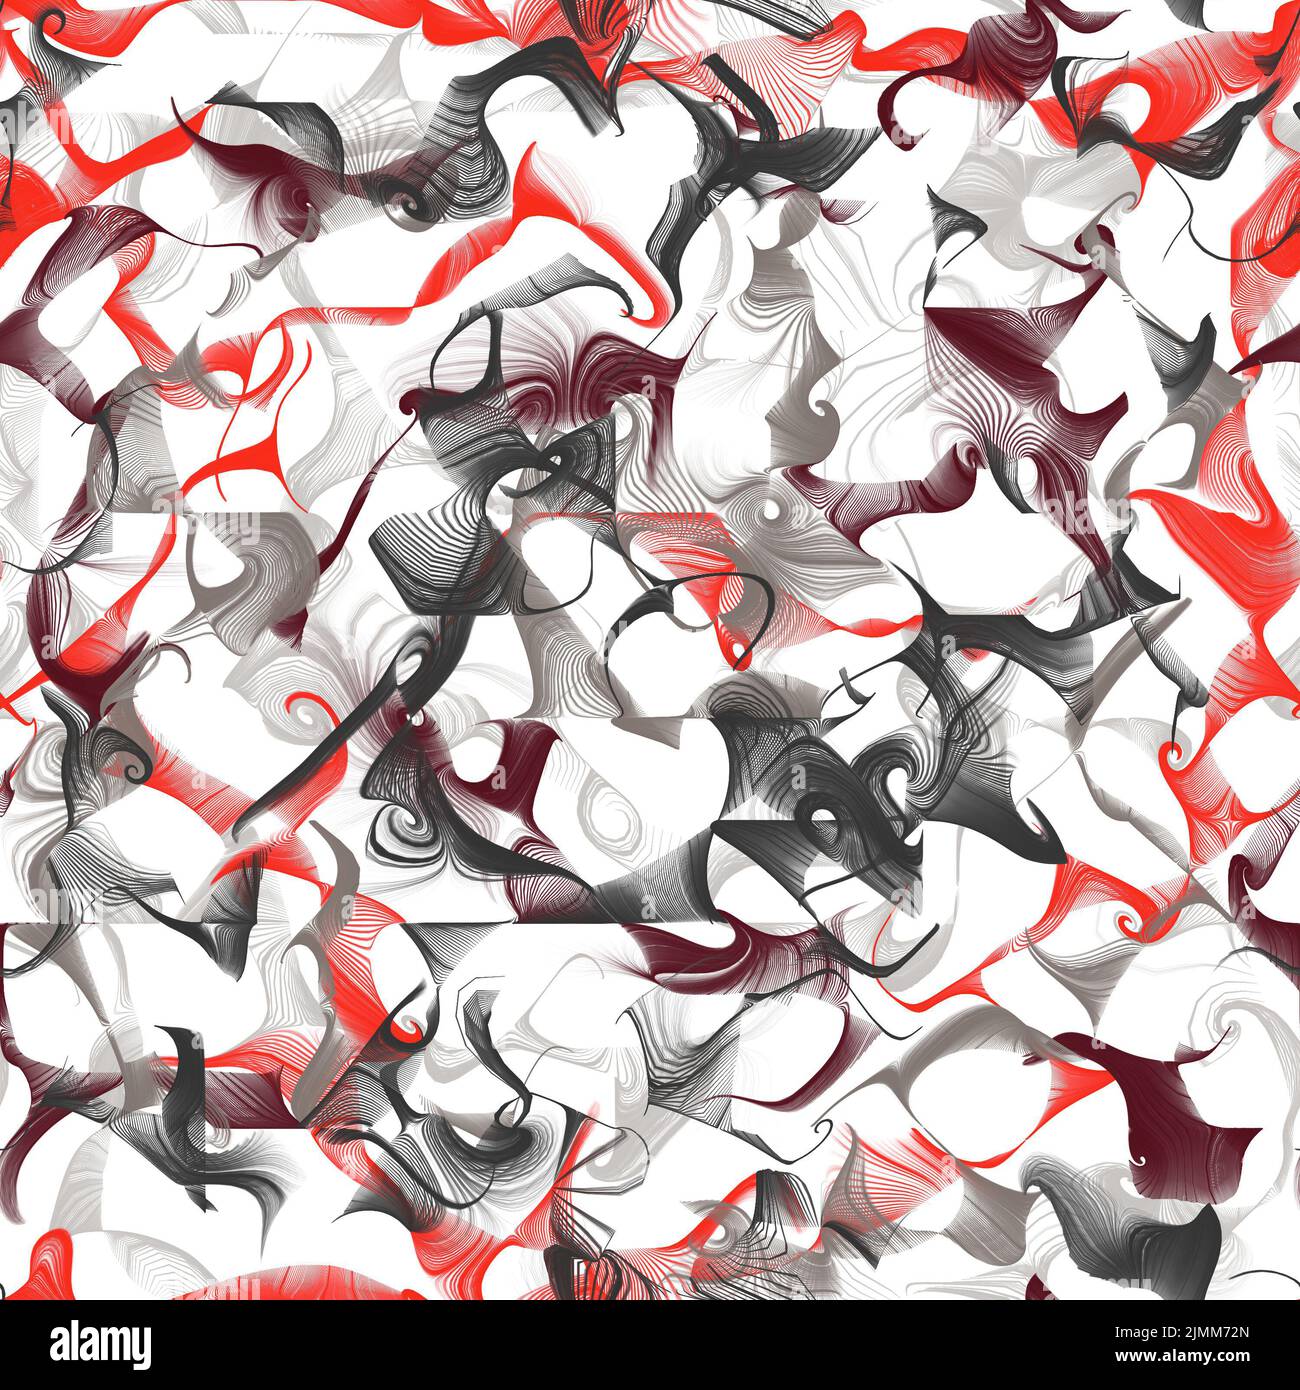 Tratti di pennello astratti caotici lineari e curvi. Colori grigio, marrone e rosso su sfondo bianco. Ripetizione senza giunture Foto Stock